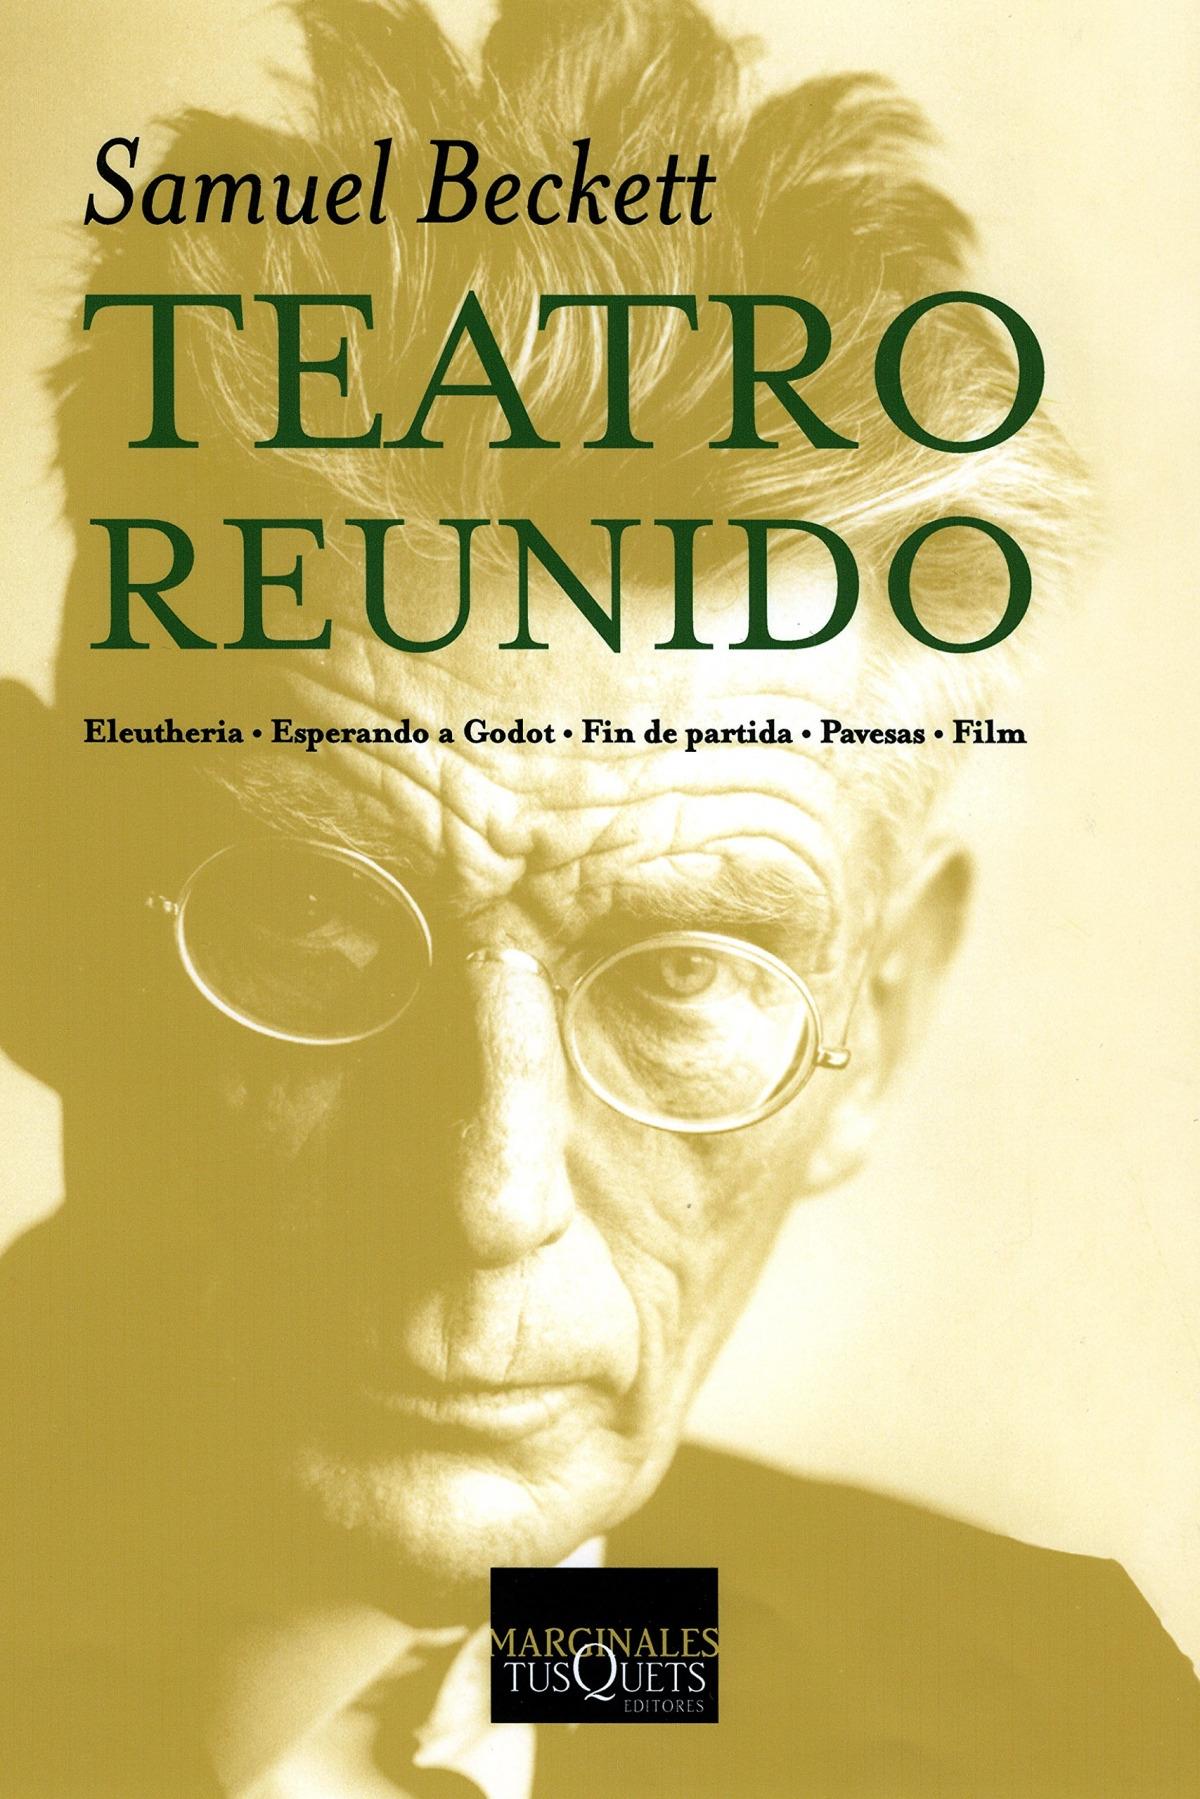 Teatro reunido "Eleutheria / Esperando a Godot / Fin de partida / Pavesas / Film (Samuel Beckett)". 